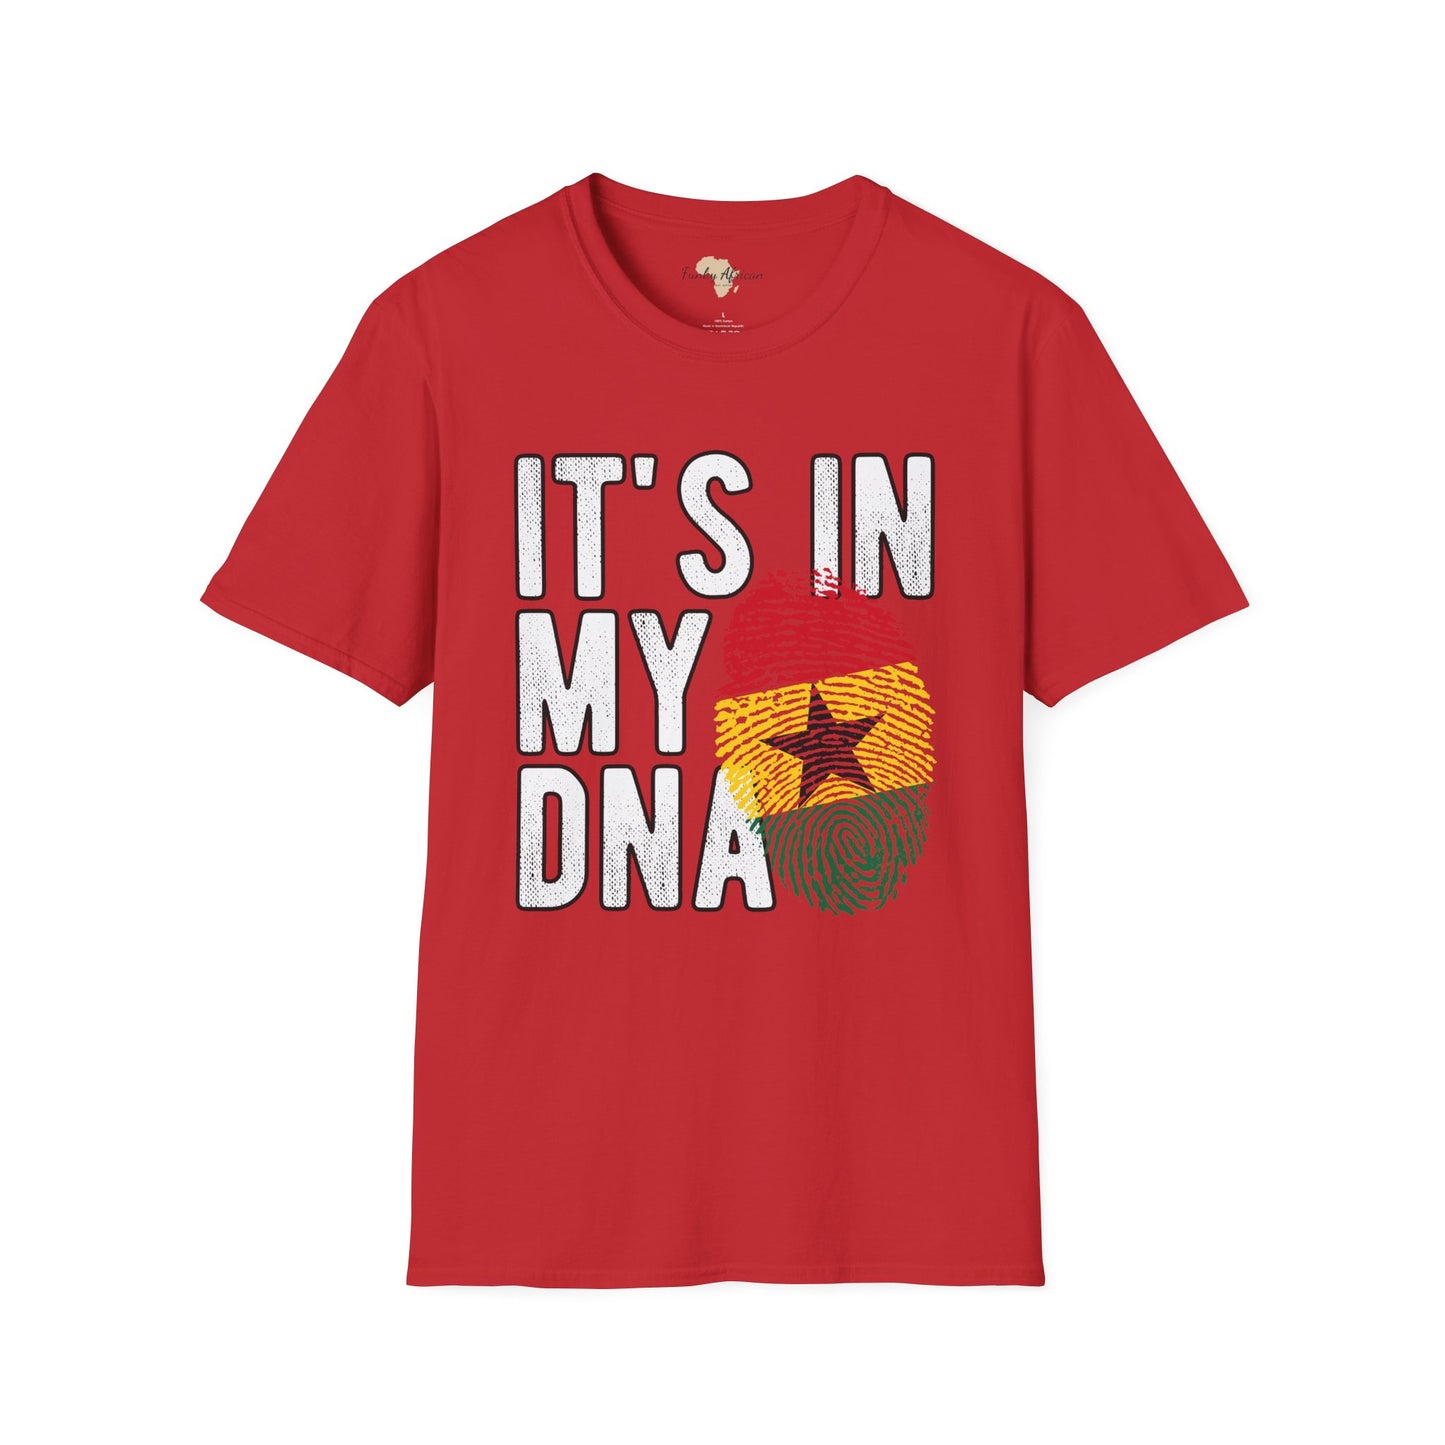 it's in my DNA unisex tee - Ghana